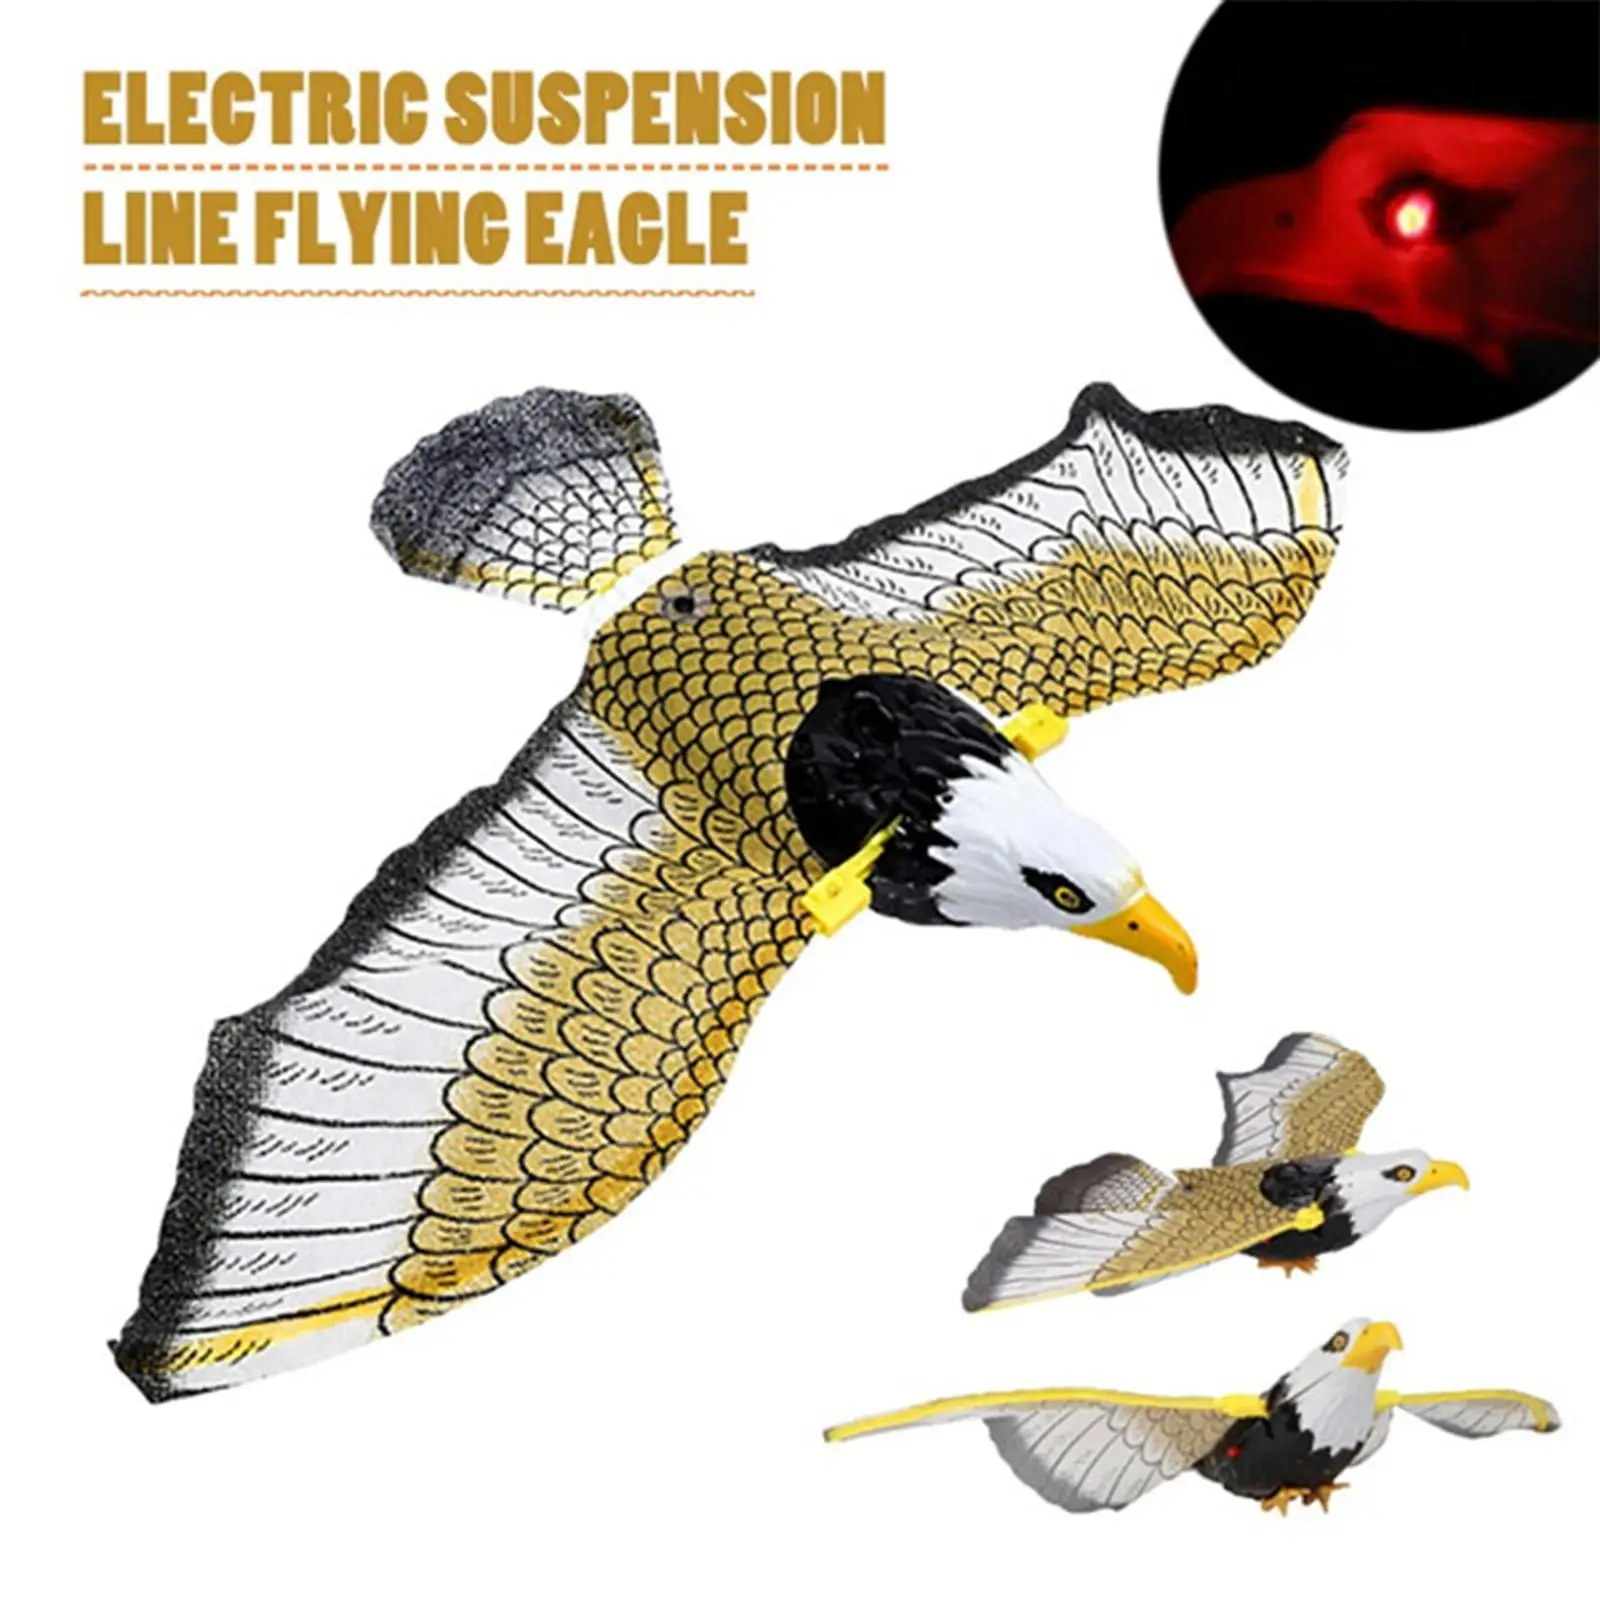 

New Luminous Bird Repellent Hanging Eagle Flying Bird Scarer Garden Decoration 2 AA Batteries Portable Flying Bird Hanging Eagle